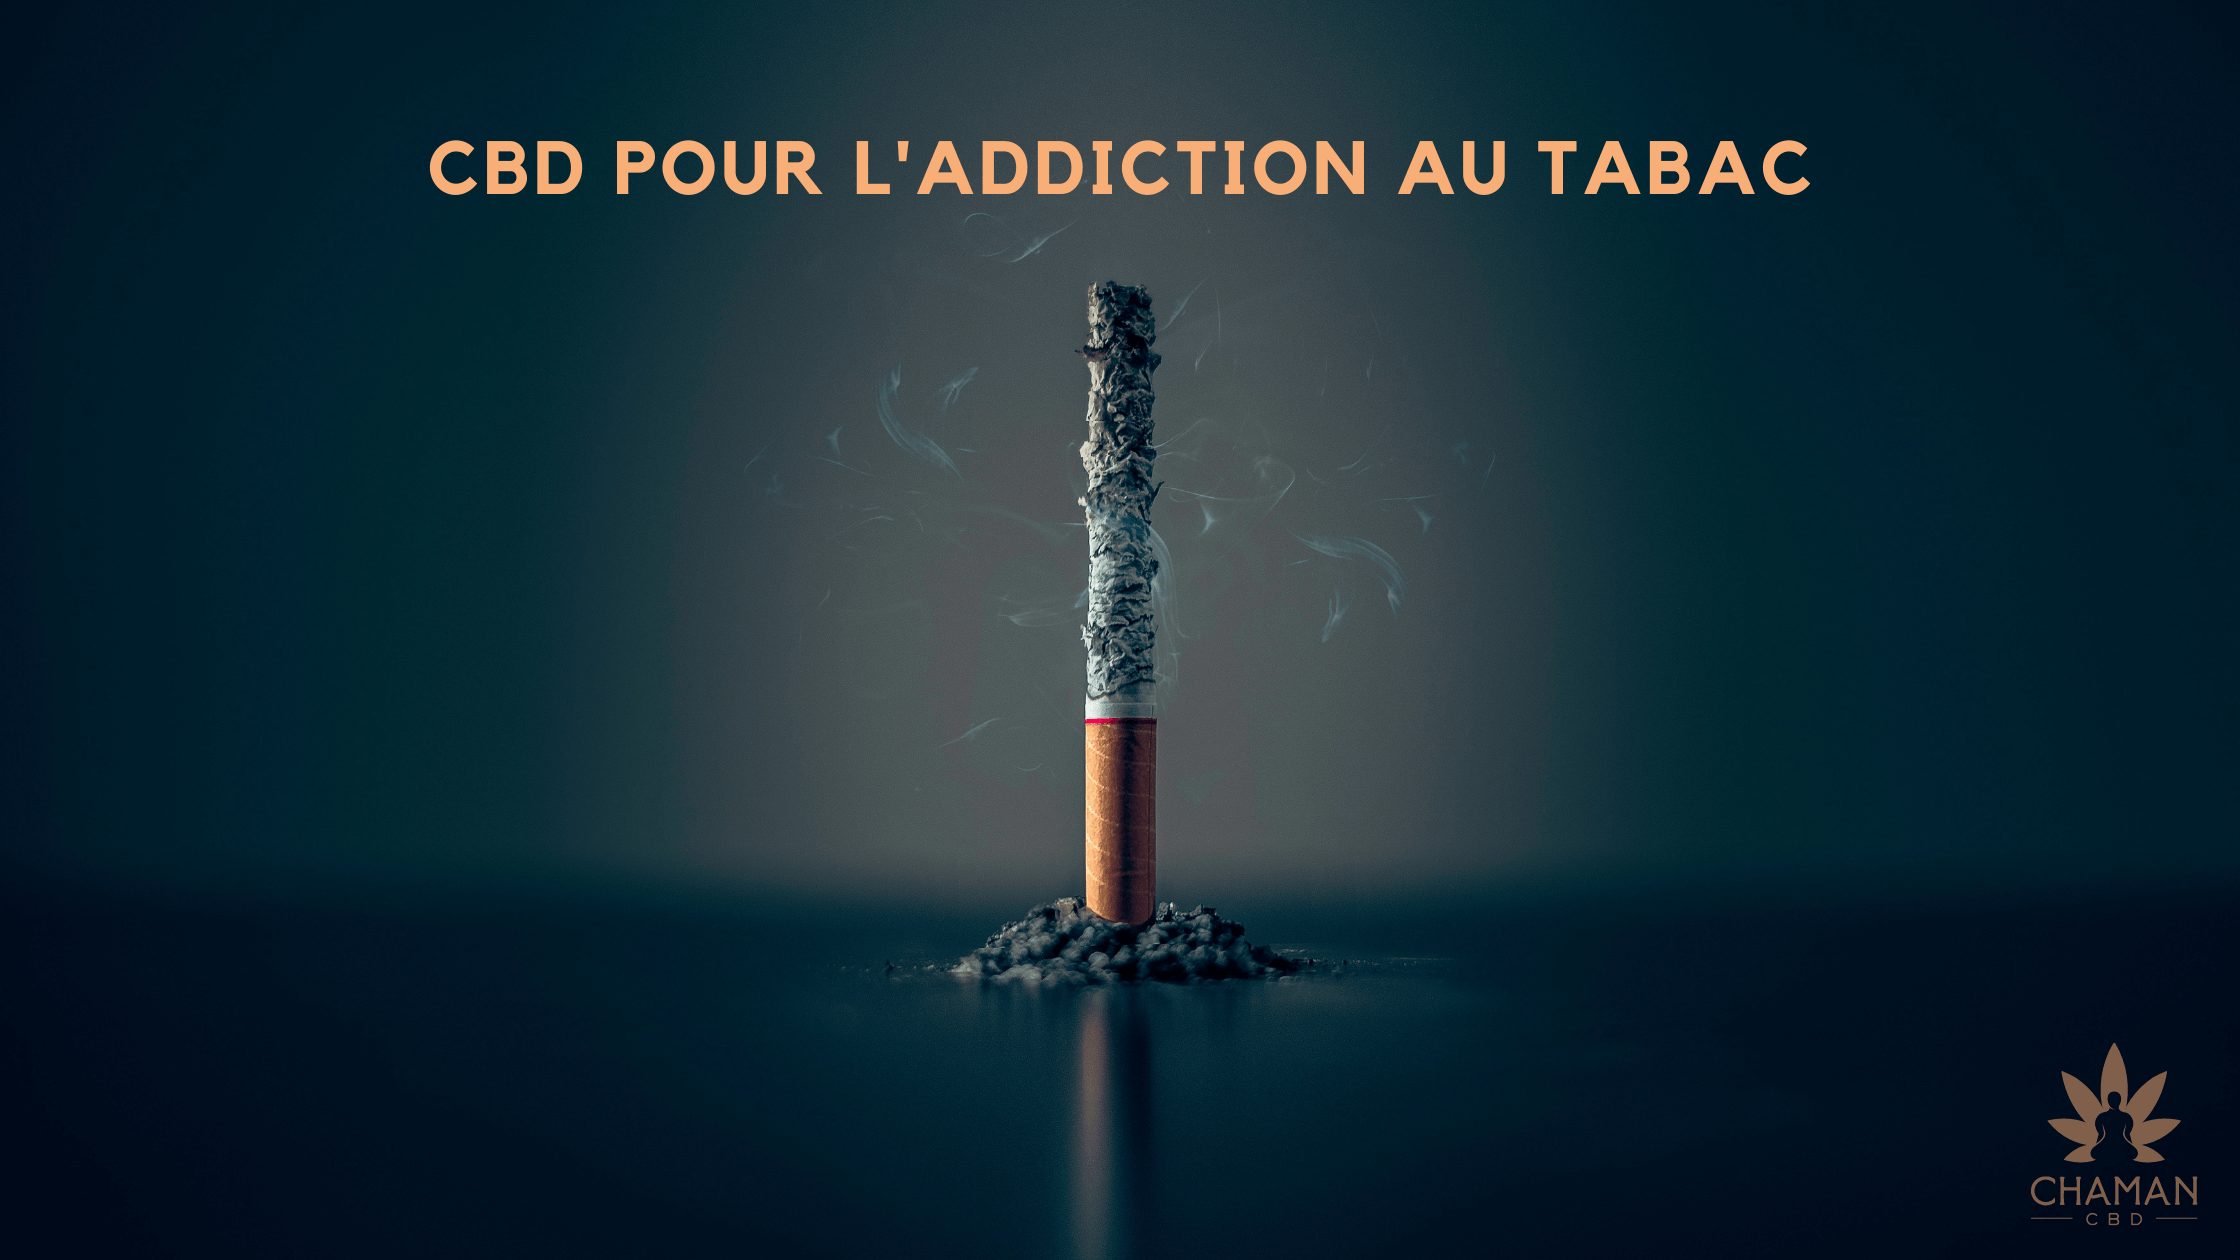 CBD pour la addiction au tabac blog banner